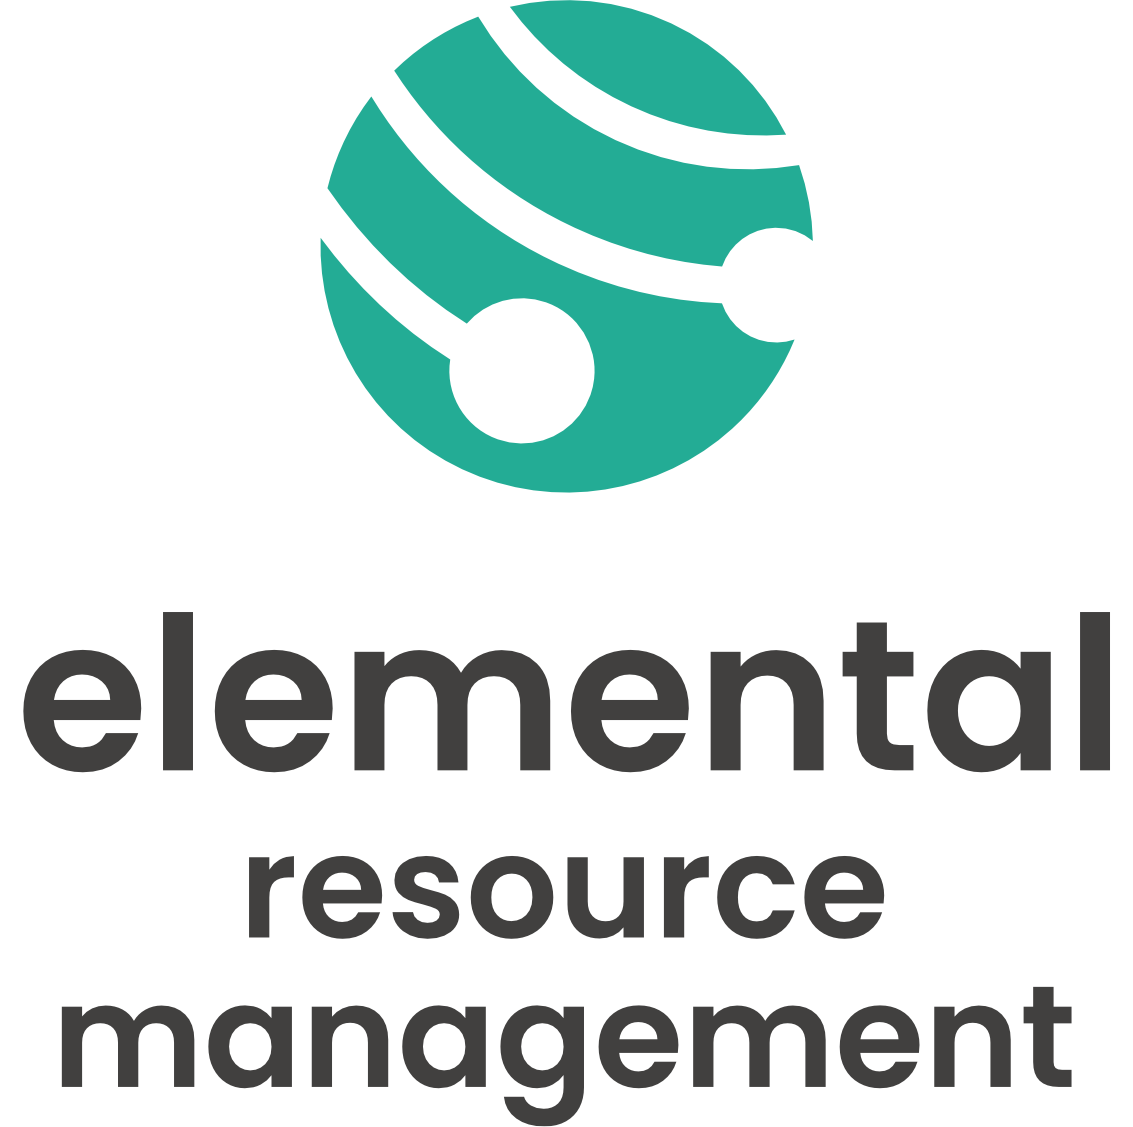 Elemental Resource Management